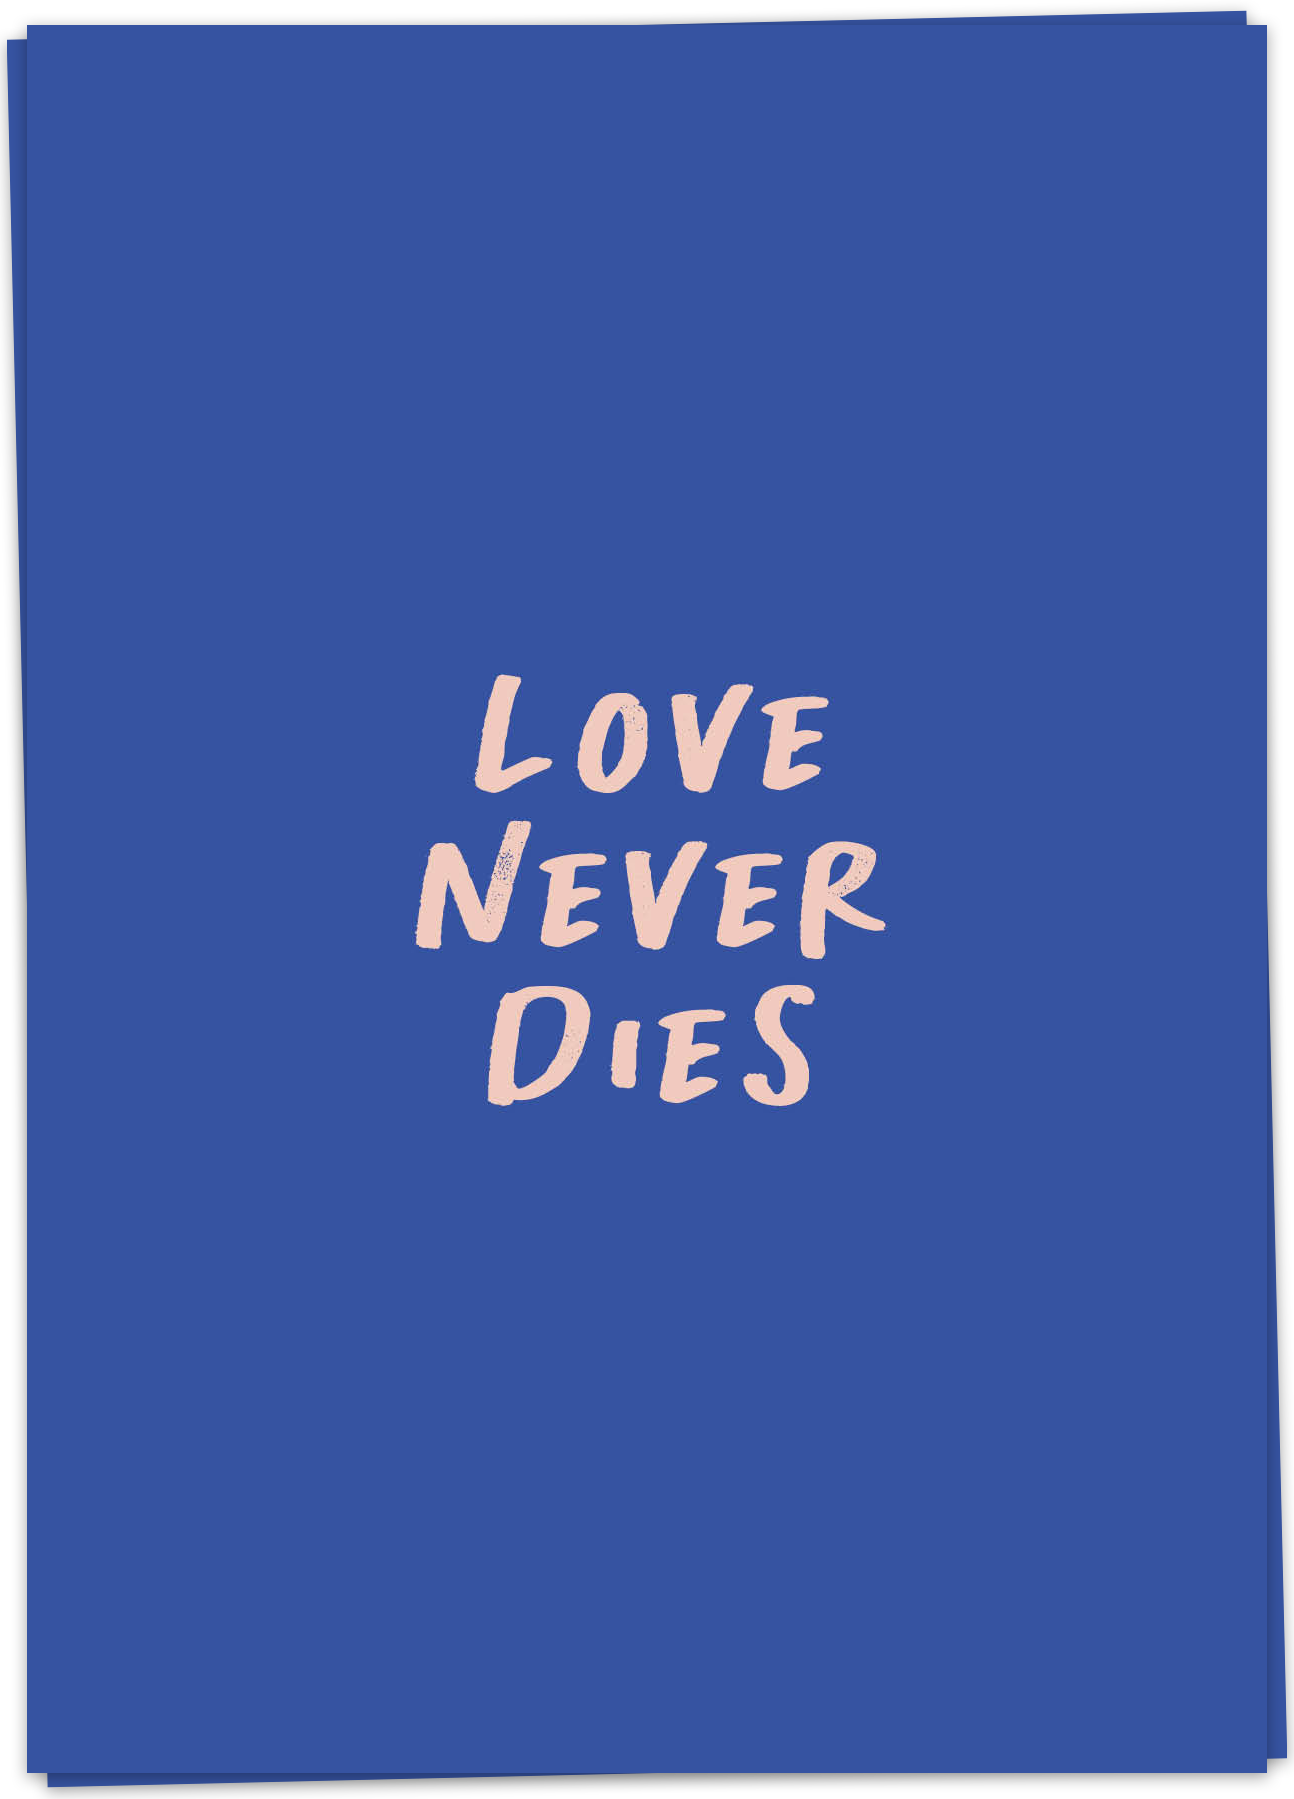 [48+] True Love Never Dies Wallpaper | WallpaperSafari.com